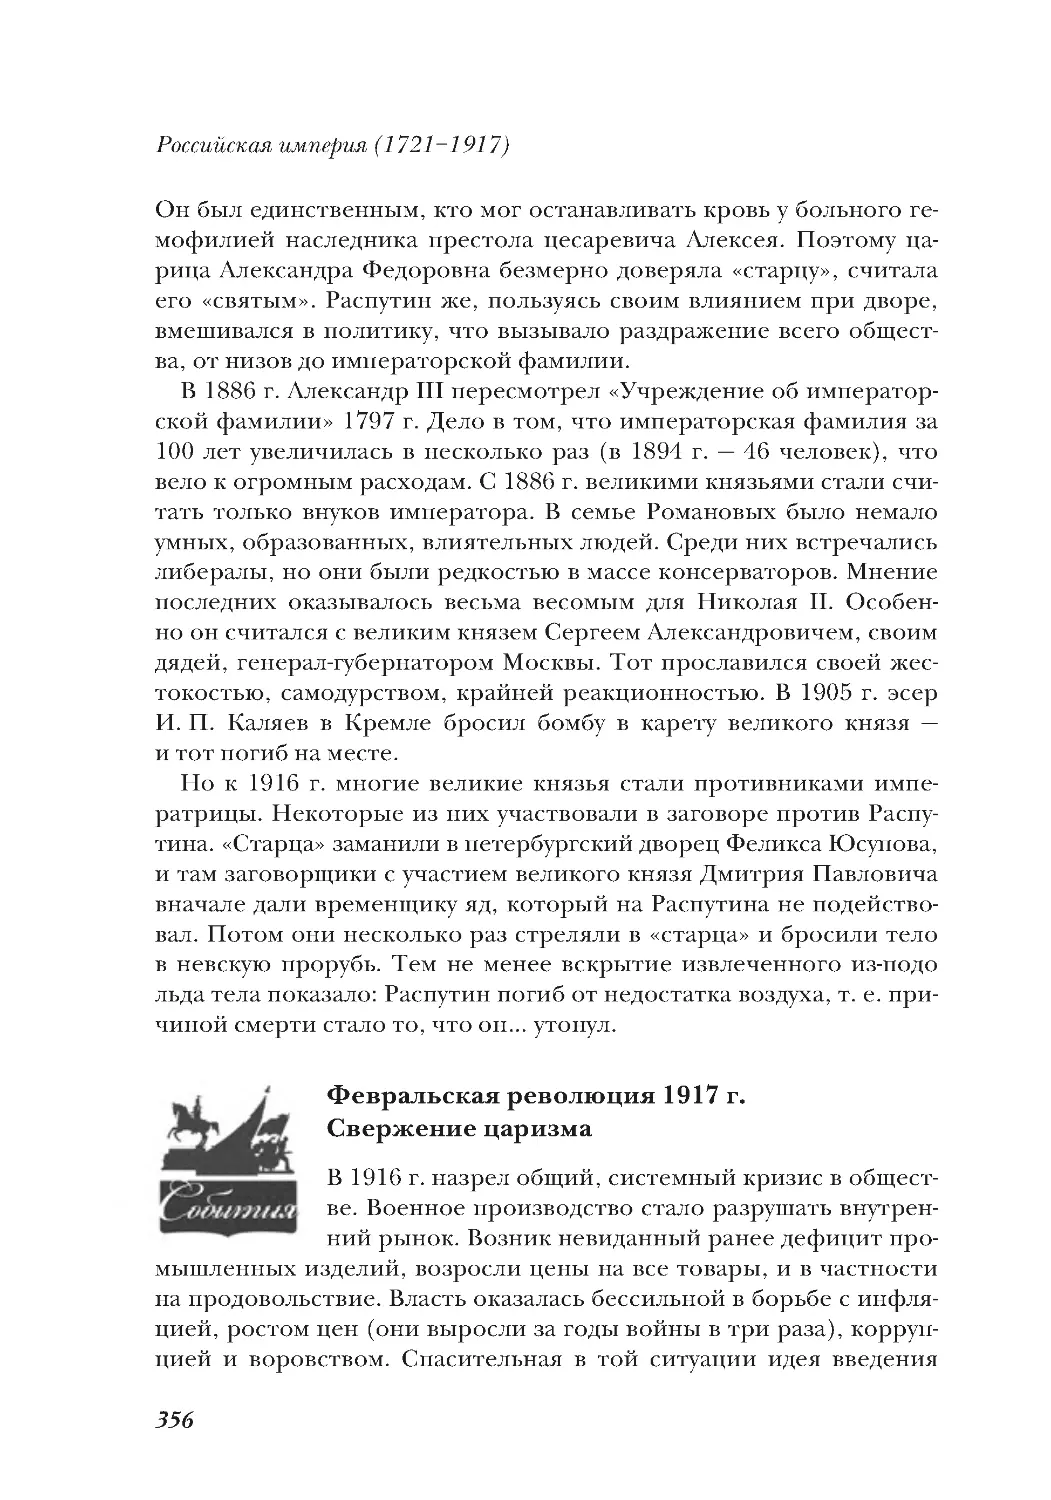 Февральская революция 1917 г. Свержение царизма